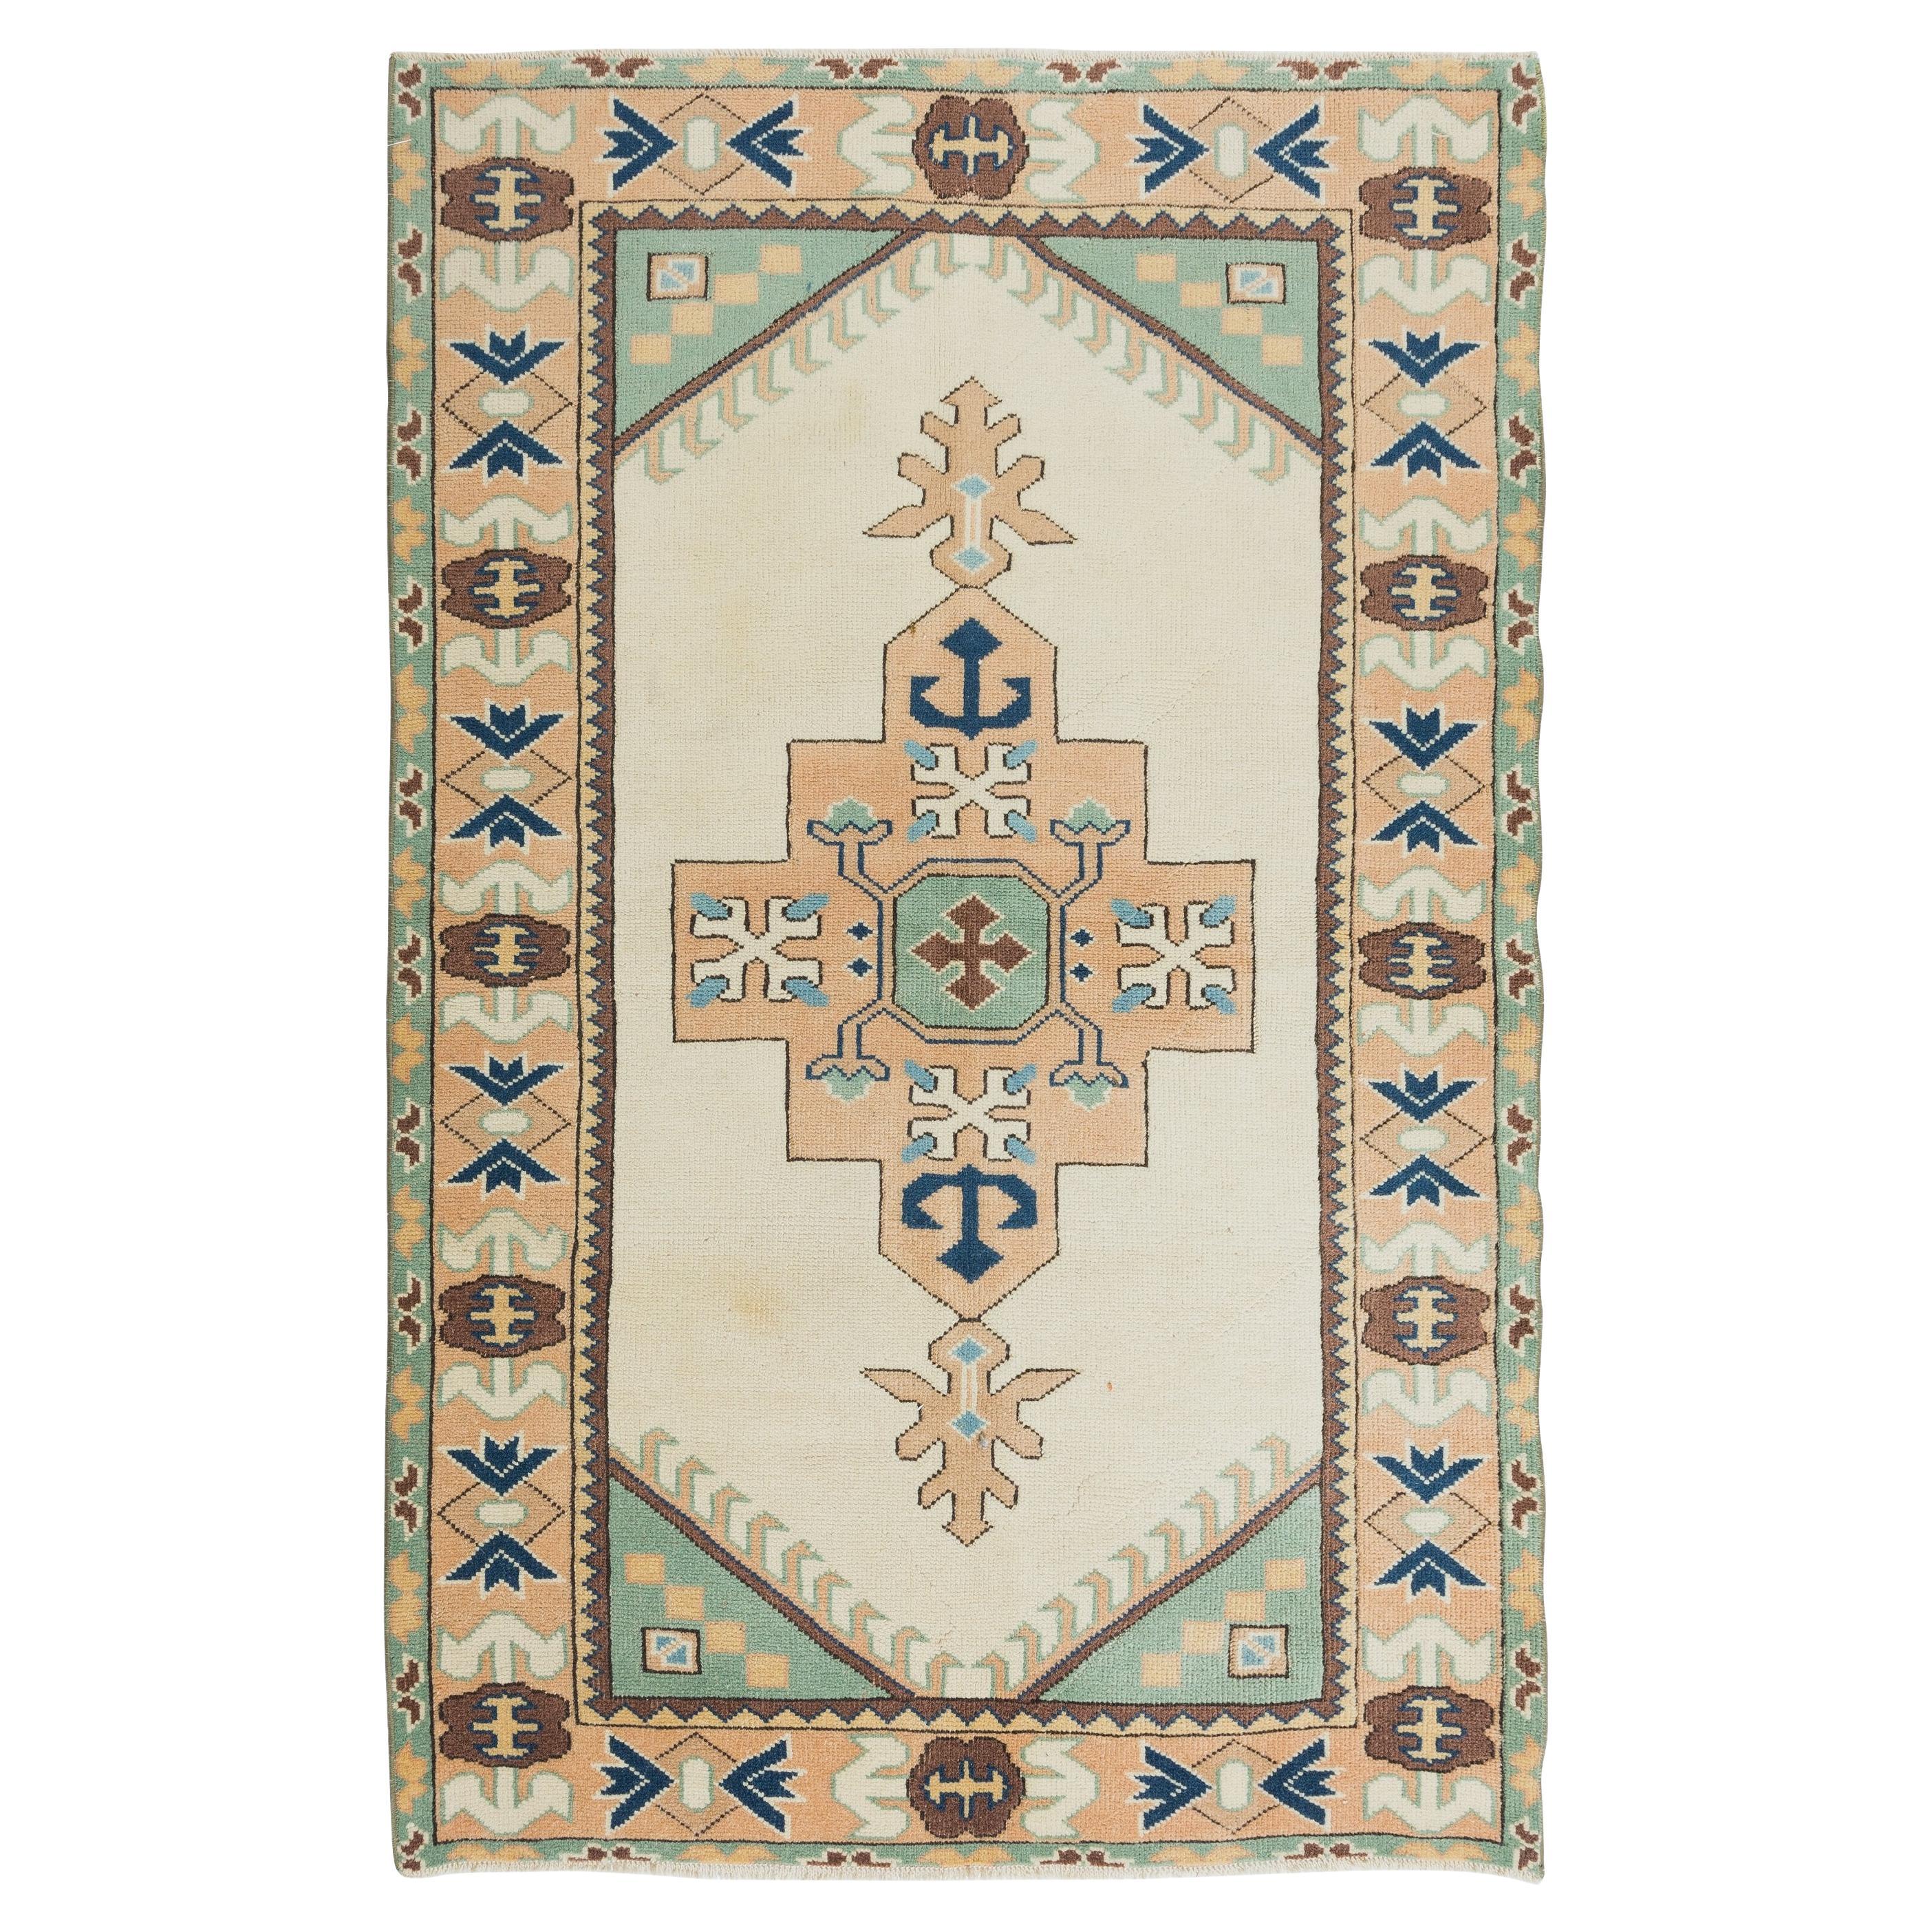 4x6.2 Ft Vintage Handgefertigter geometrischer Anatolischer Akzent-Teppich, Bodenbezug aus Wolle